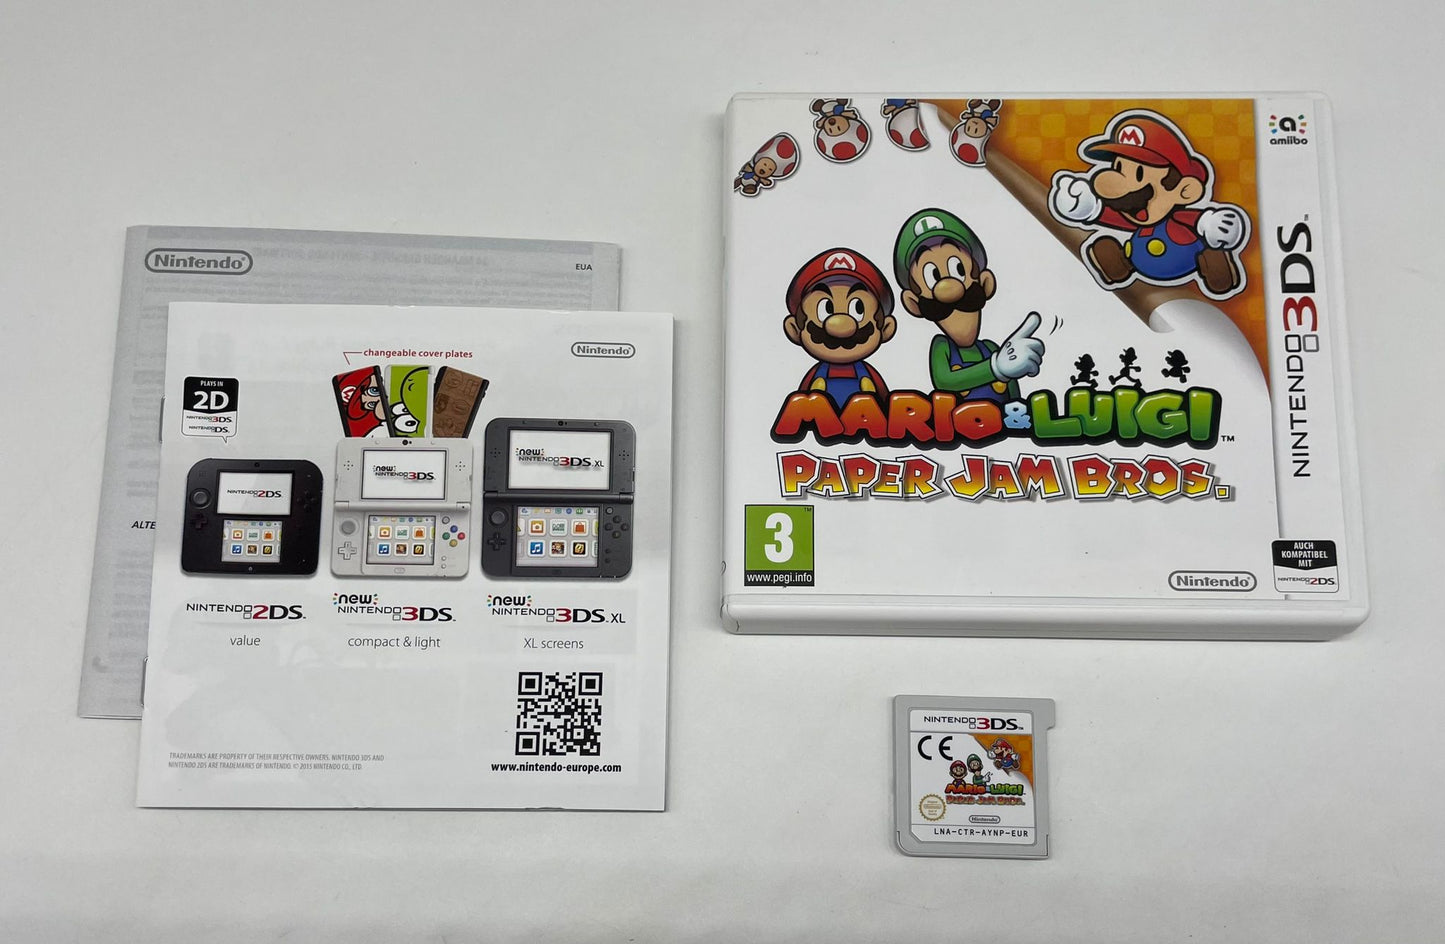 Mario & Luigi: Paper Jam Bros. OVP